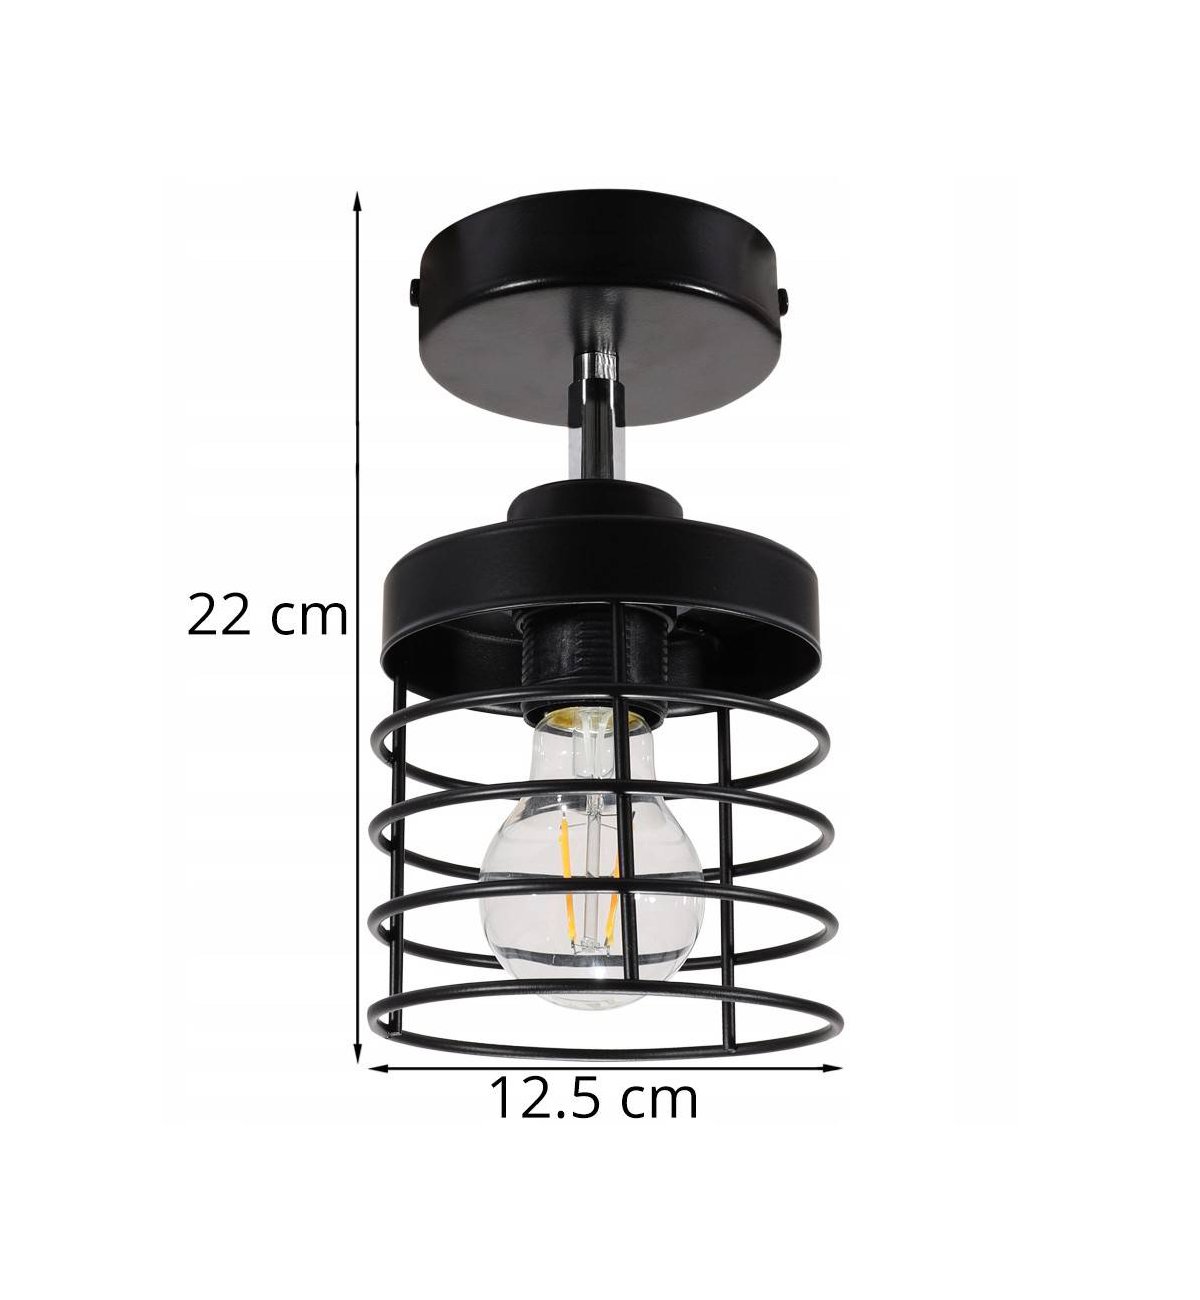 Lampa Sufitowa Plafon Metalowy Loft Led Plafony Domowe Wewnetrzne Polski Producent Sklep Light Home